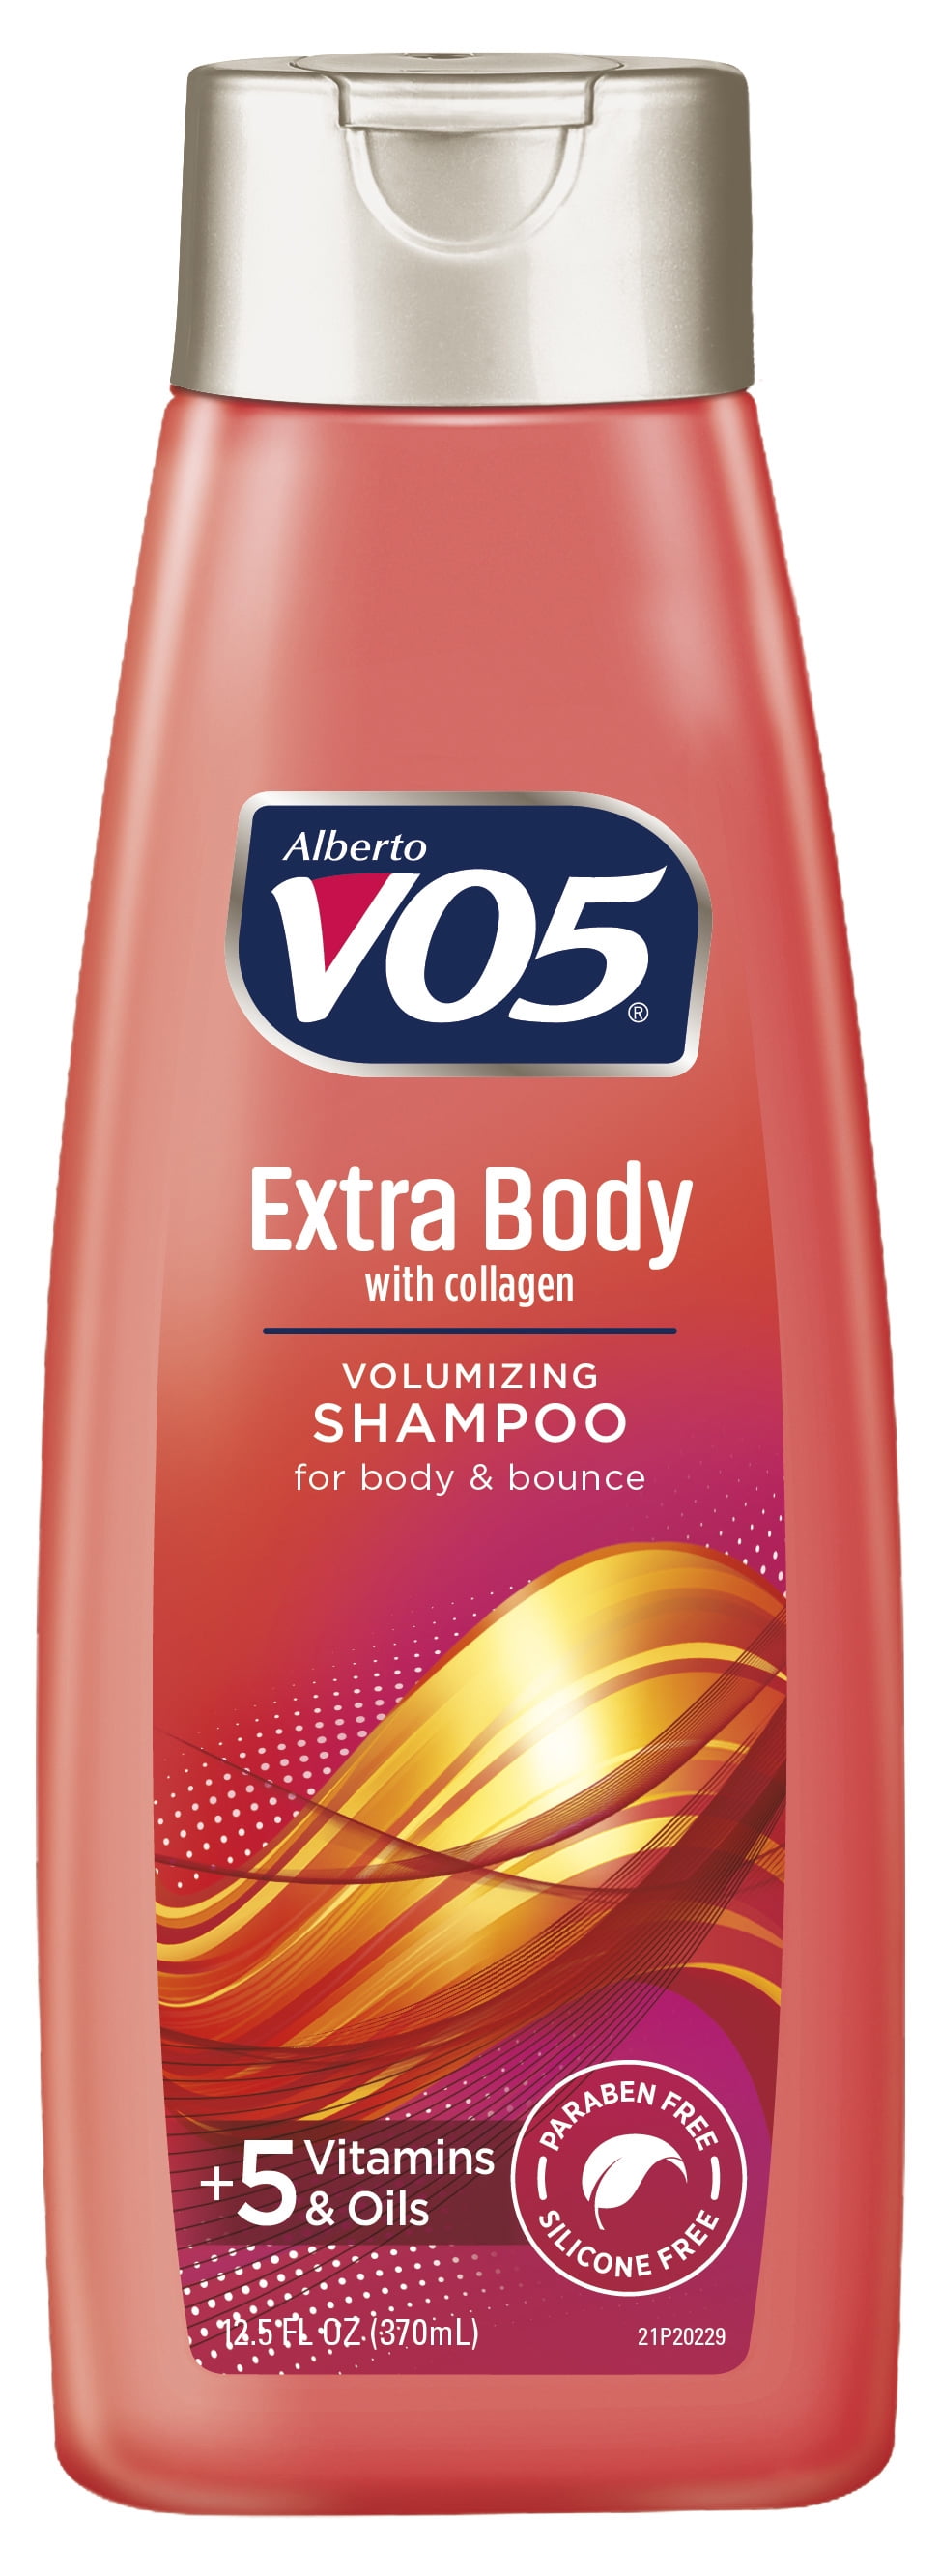 VO5 Extra Body Daily Shampoo, 12.5 fl oz Walmart.com